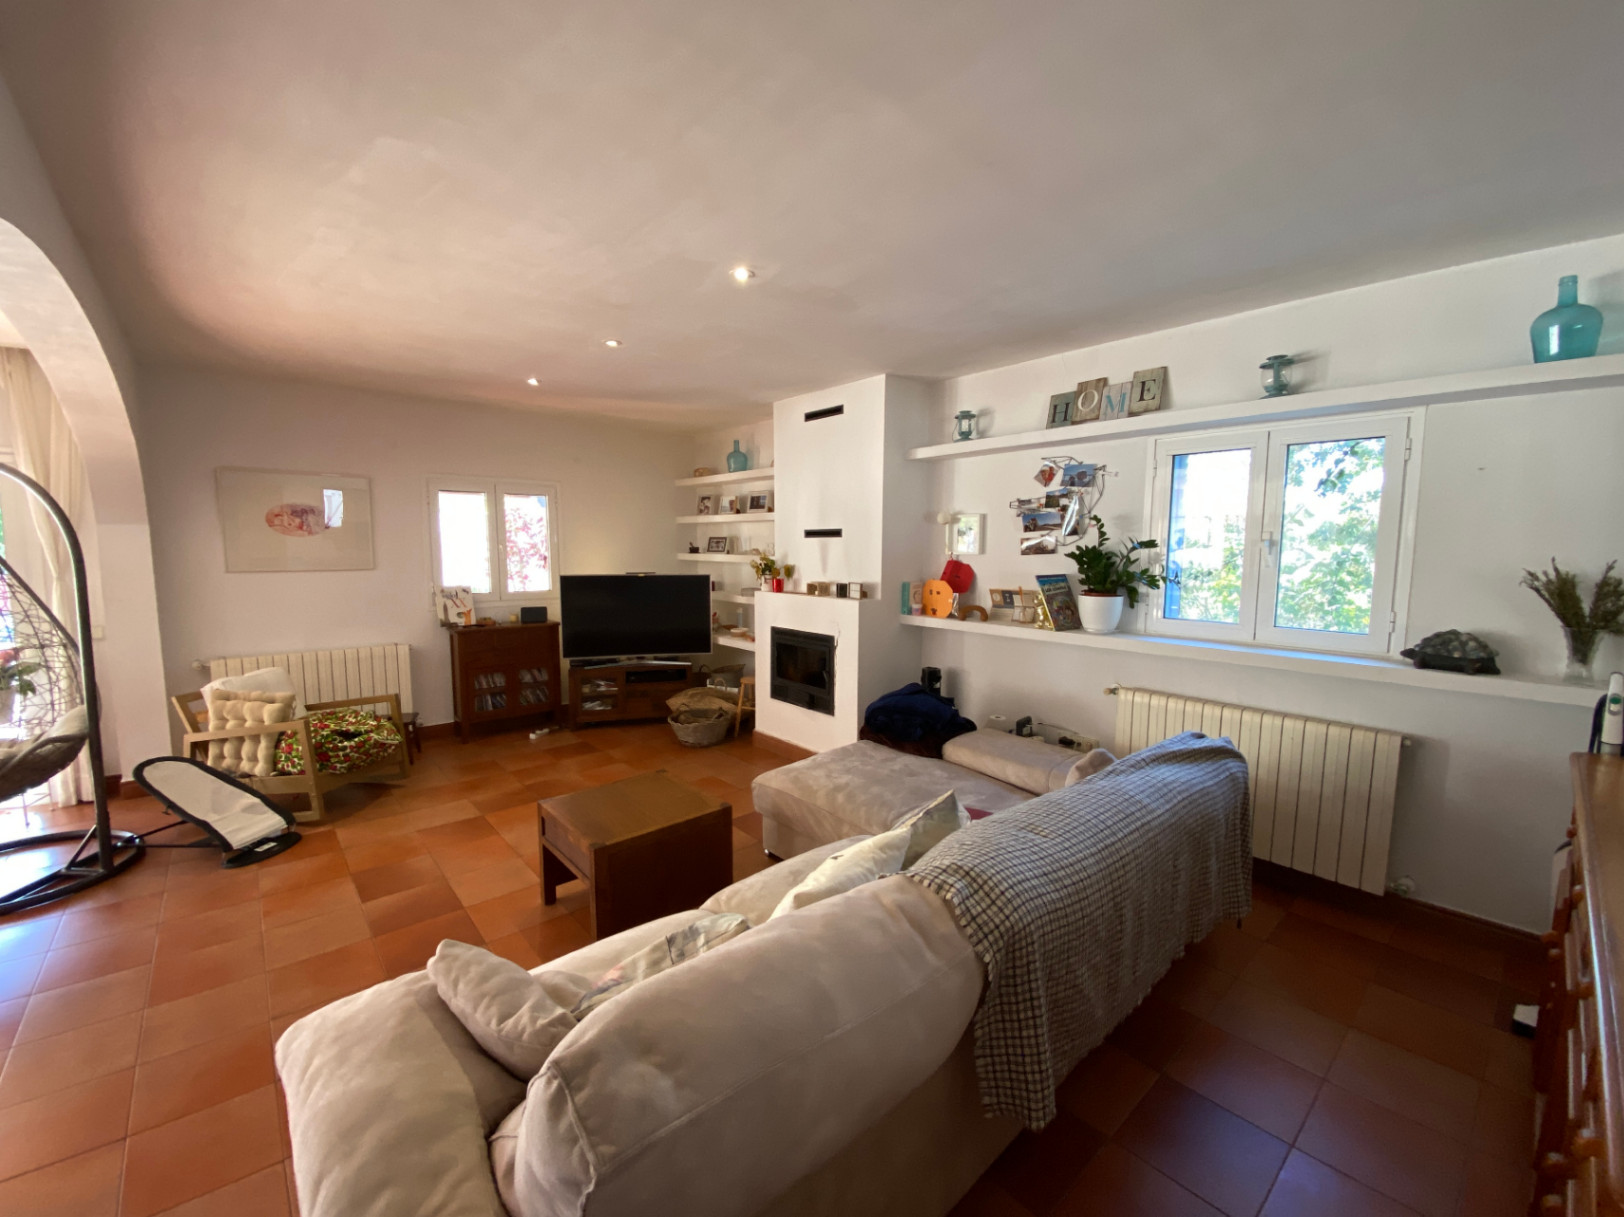 Landhaus in sehr ruhiger und privaten Lage, zwischen Ibiza und Santa Eulalia